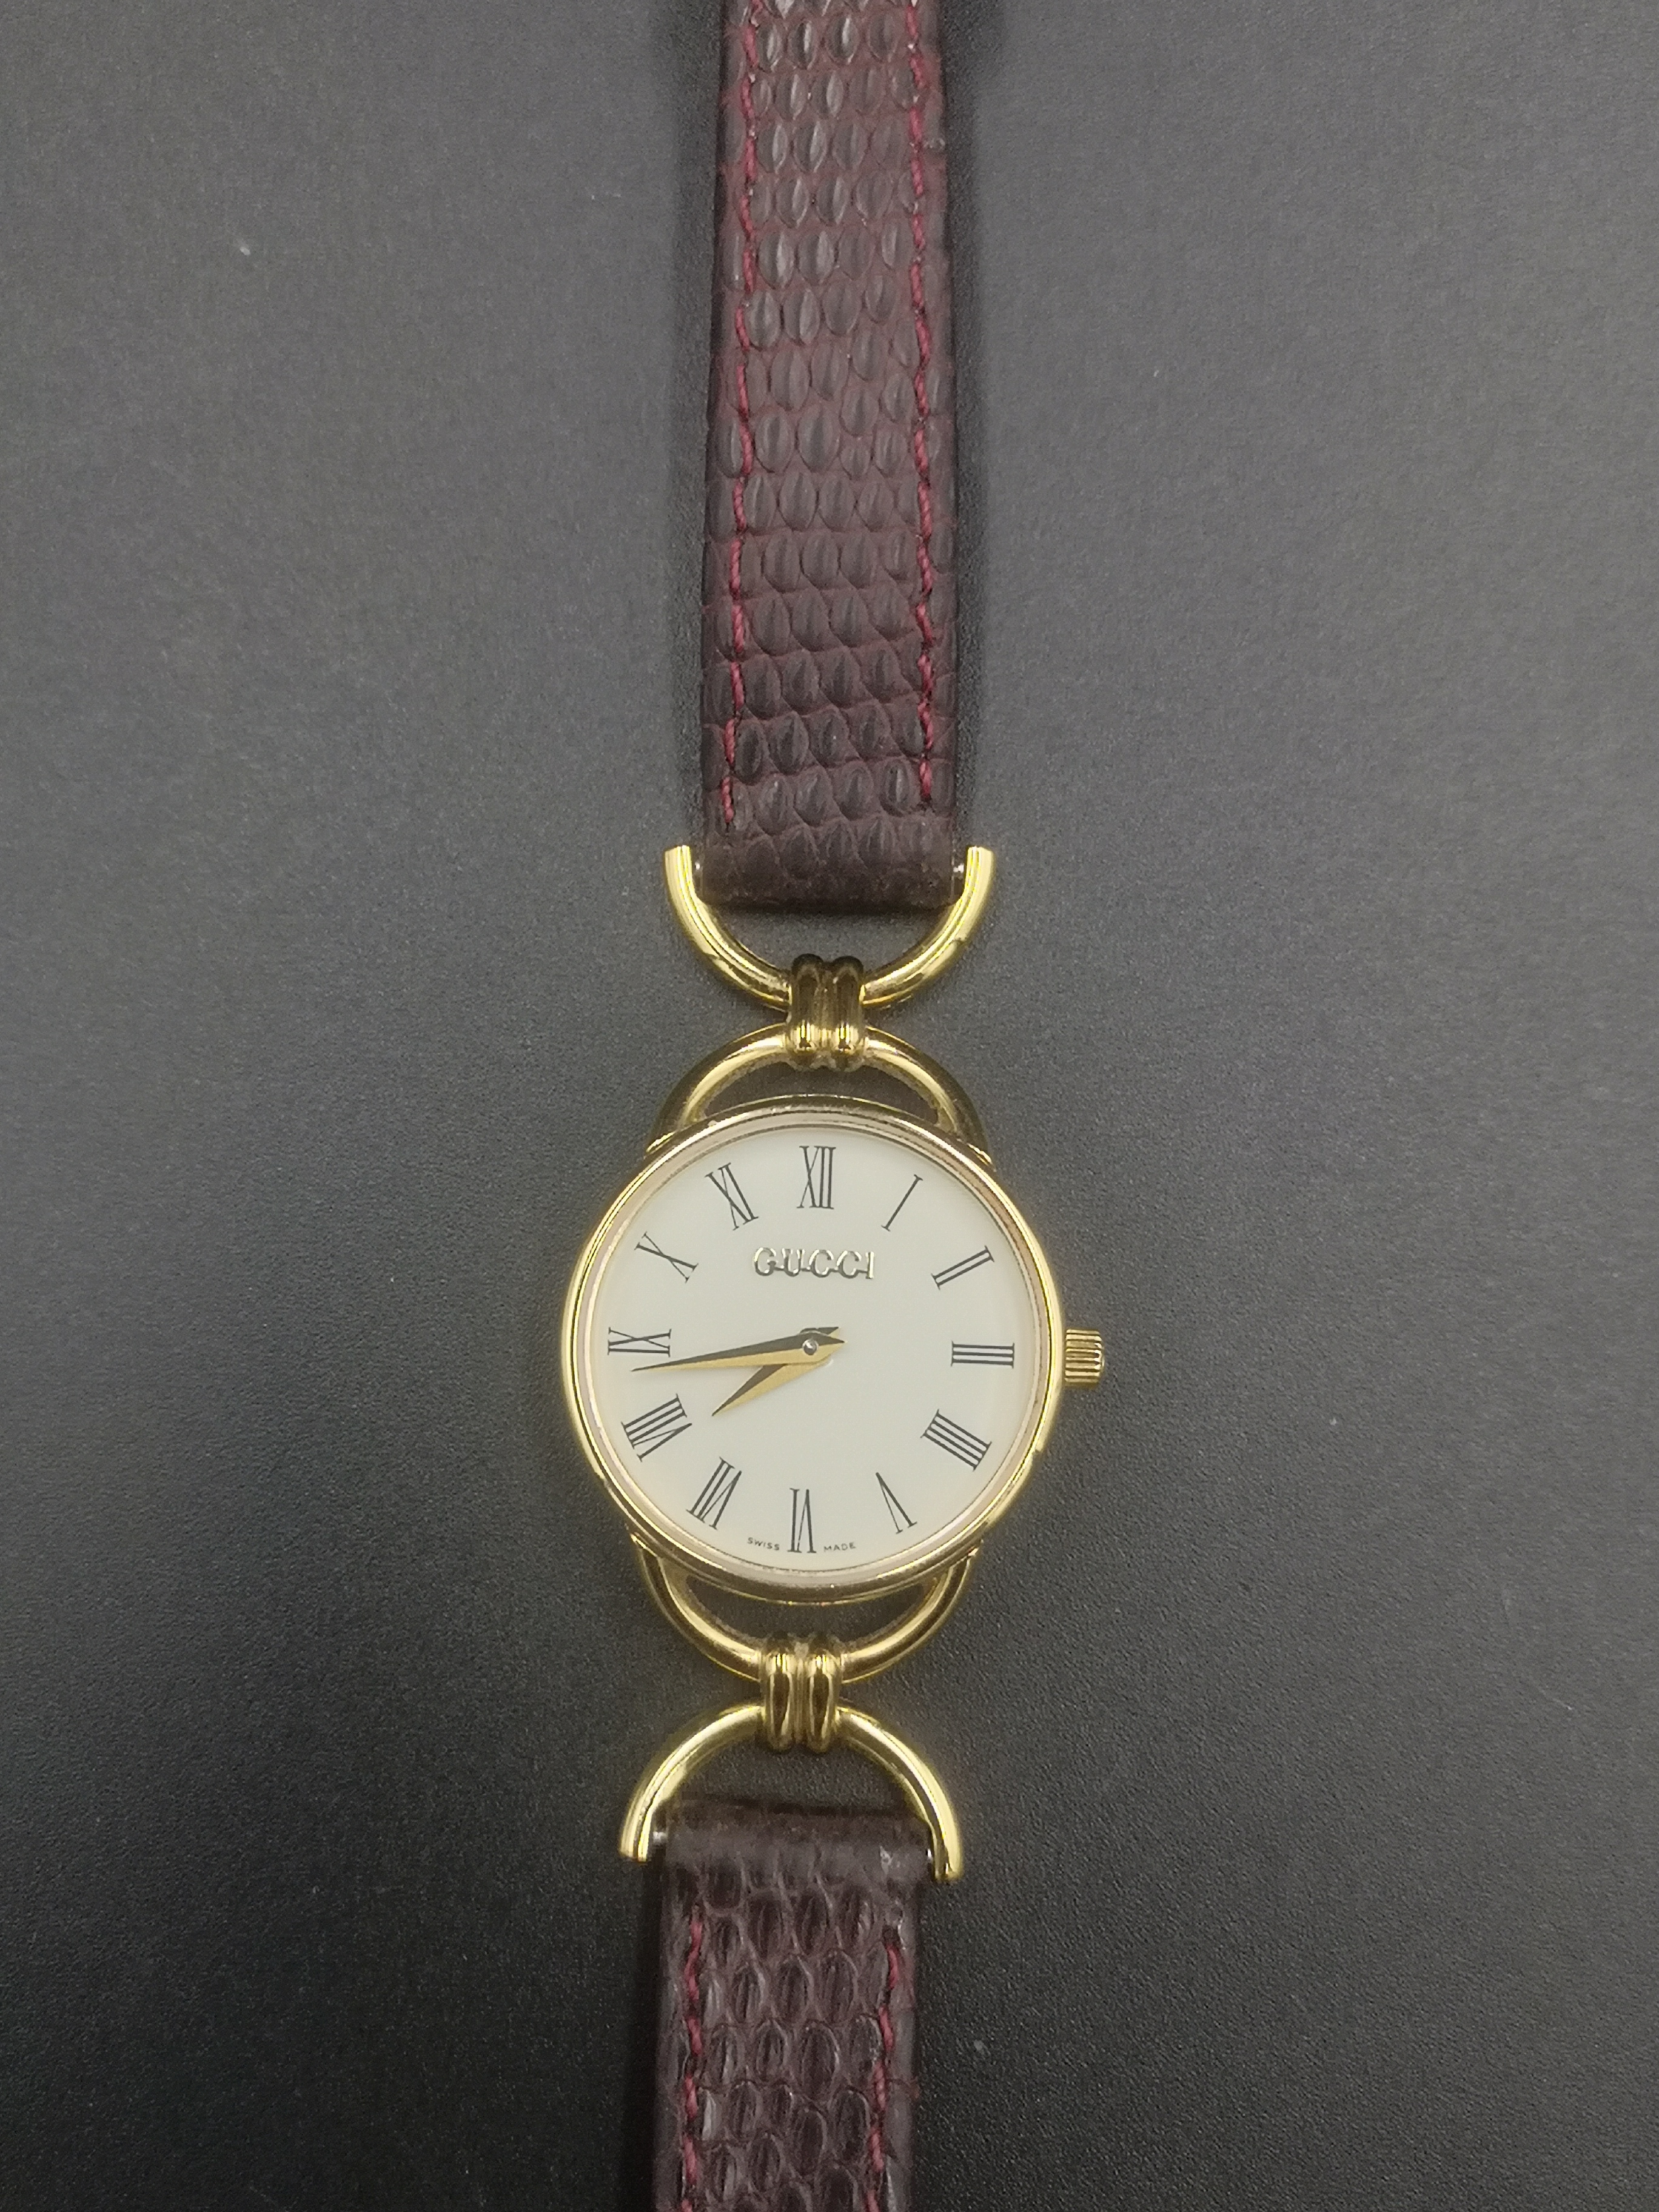 Gucci ladies quartz wrist watch in original box. - Image 5 of 6